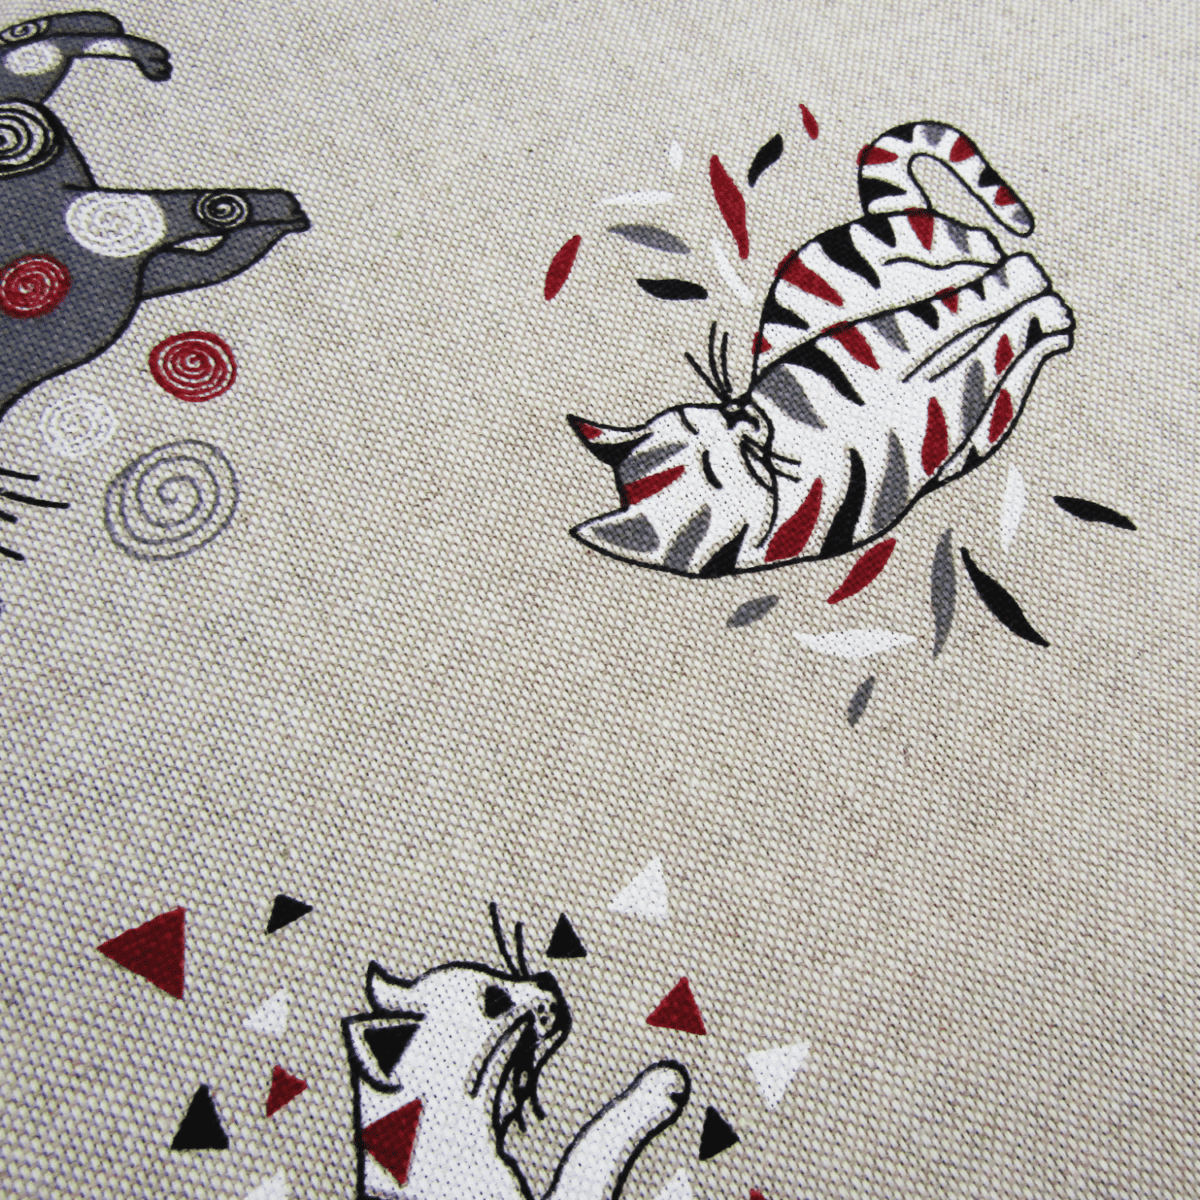 dettaglio-tovaglia-cotone-stampata-made-in-italy-miros-micetti-gattini-fondo-beige-bianco-grigio-rosso